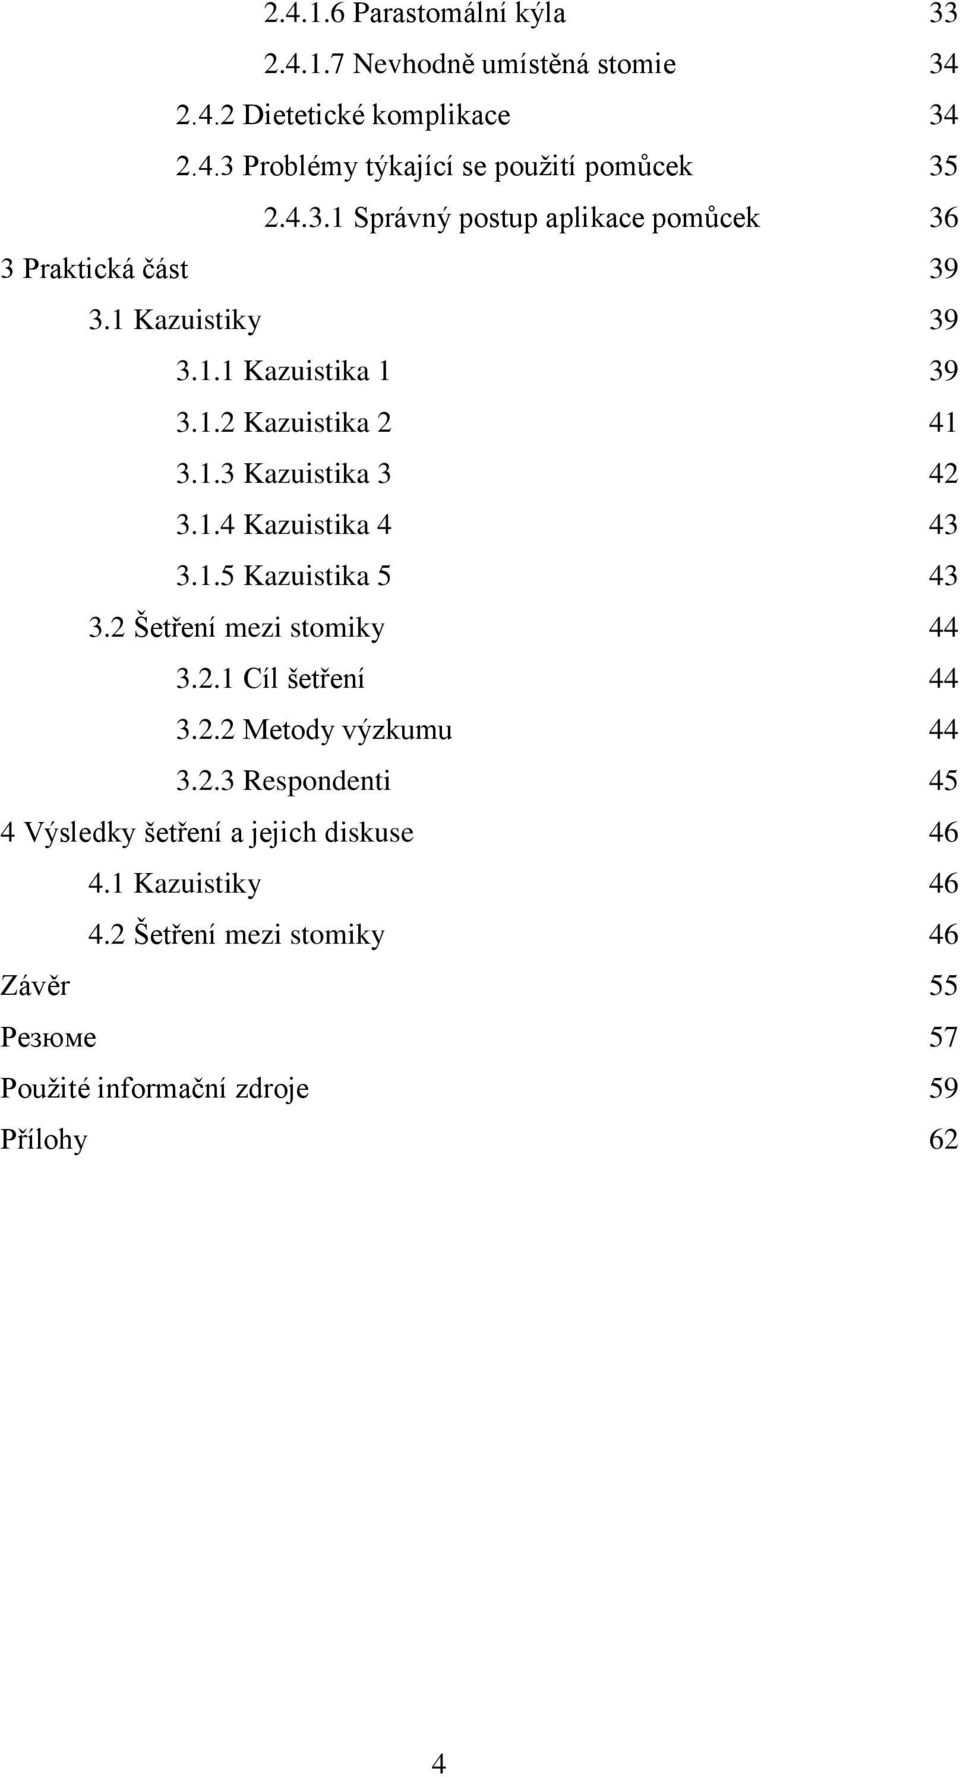 1.4 Kazuistika 4 43 3.1.5 Kazuistika 5 43 3.2 Šetření mezi stomiky 44 3.2.1 Cíl šetření 44 3.2.2 Metody výzkumu 44 3.2.3 Respondenti 45 4 Výsledky šetření a jejich diskuse 46 4.